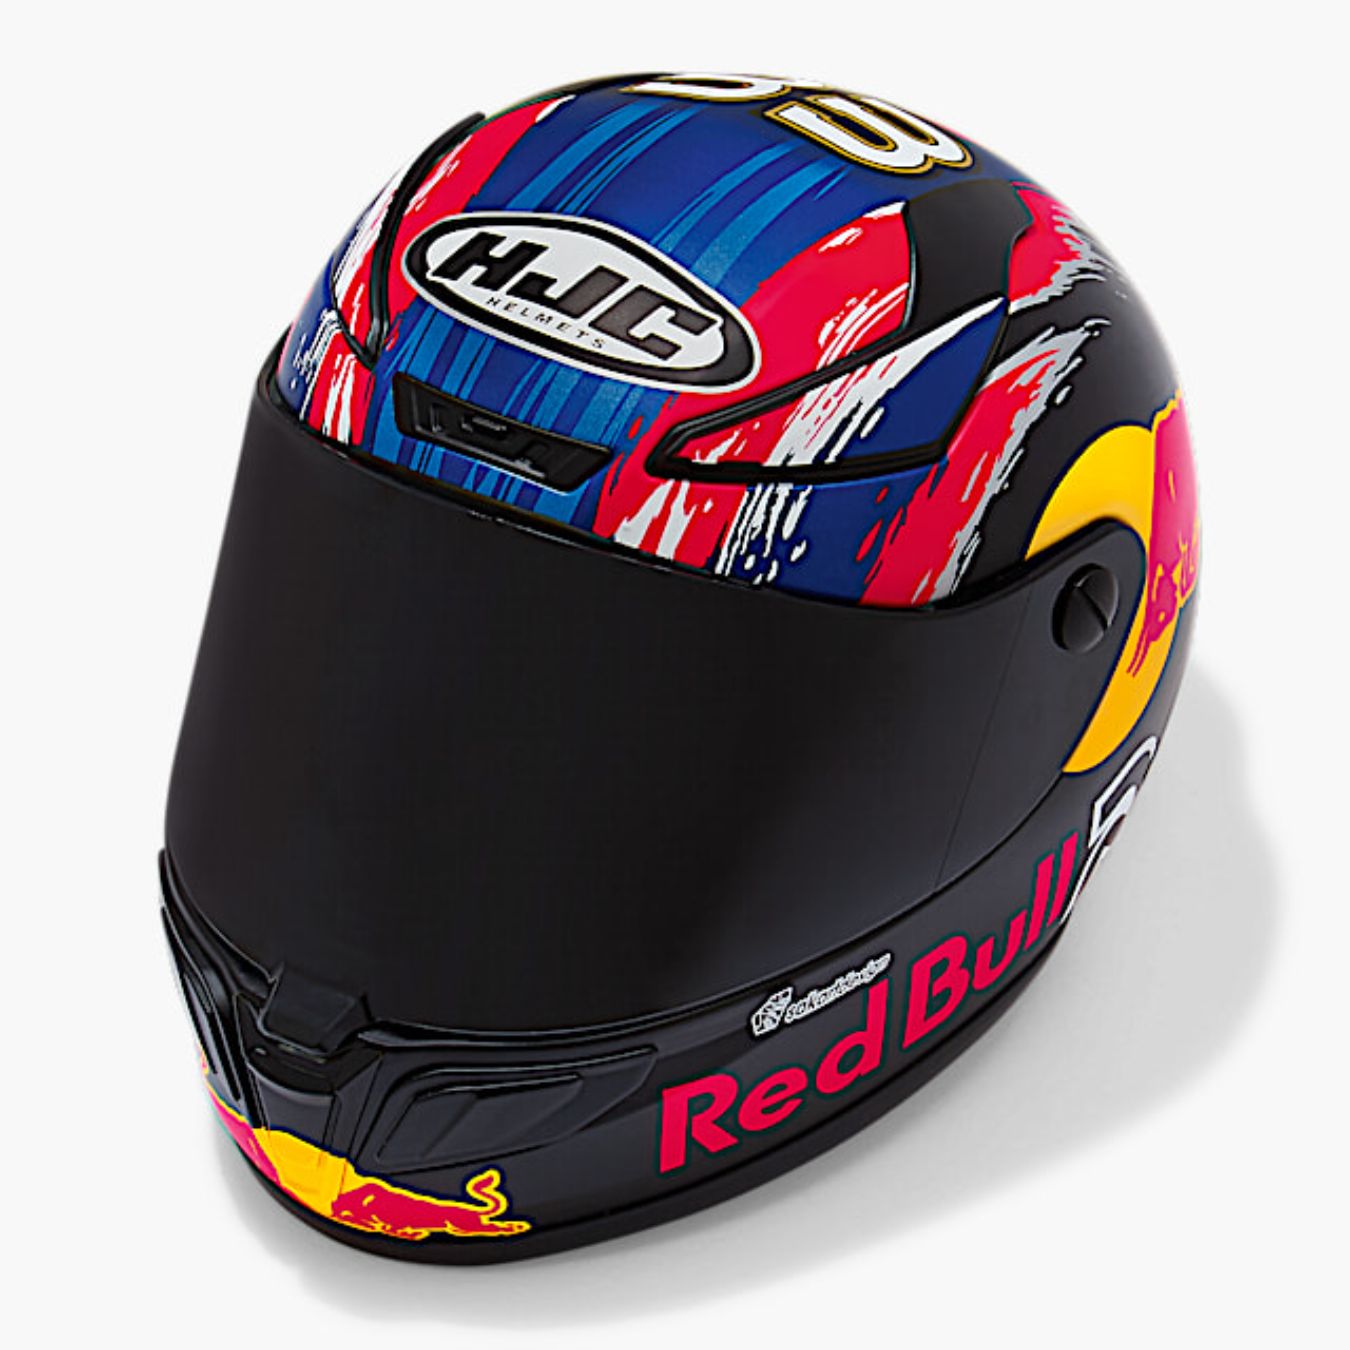 Le casque HJC RPHA 1 Quartararo Le Mans Special disponible en série limitée